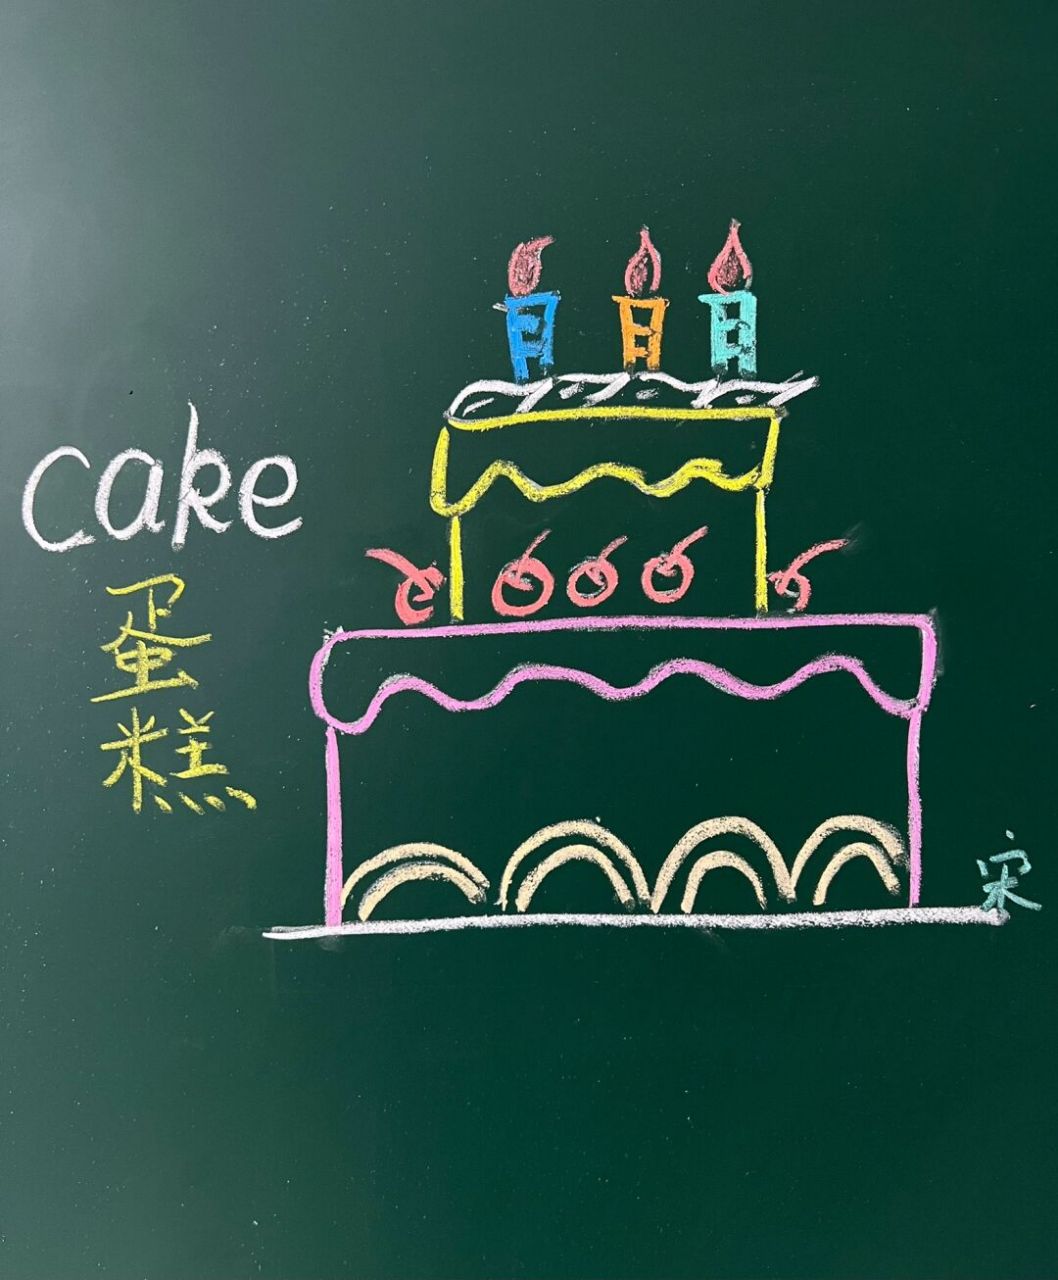 生日蛋糕字符画图片